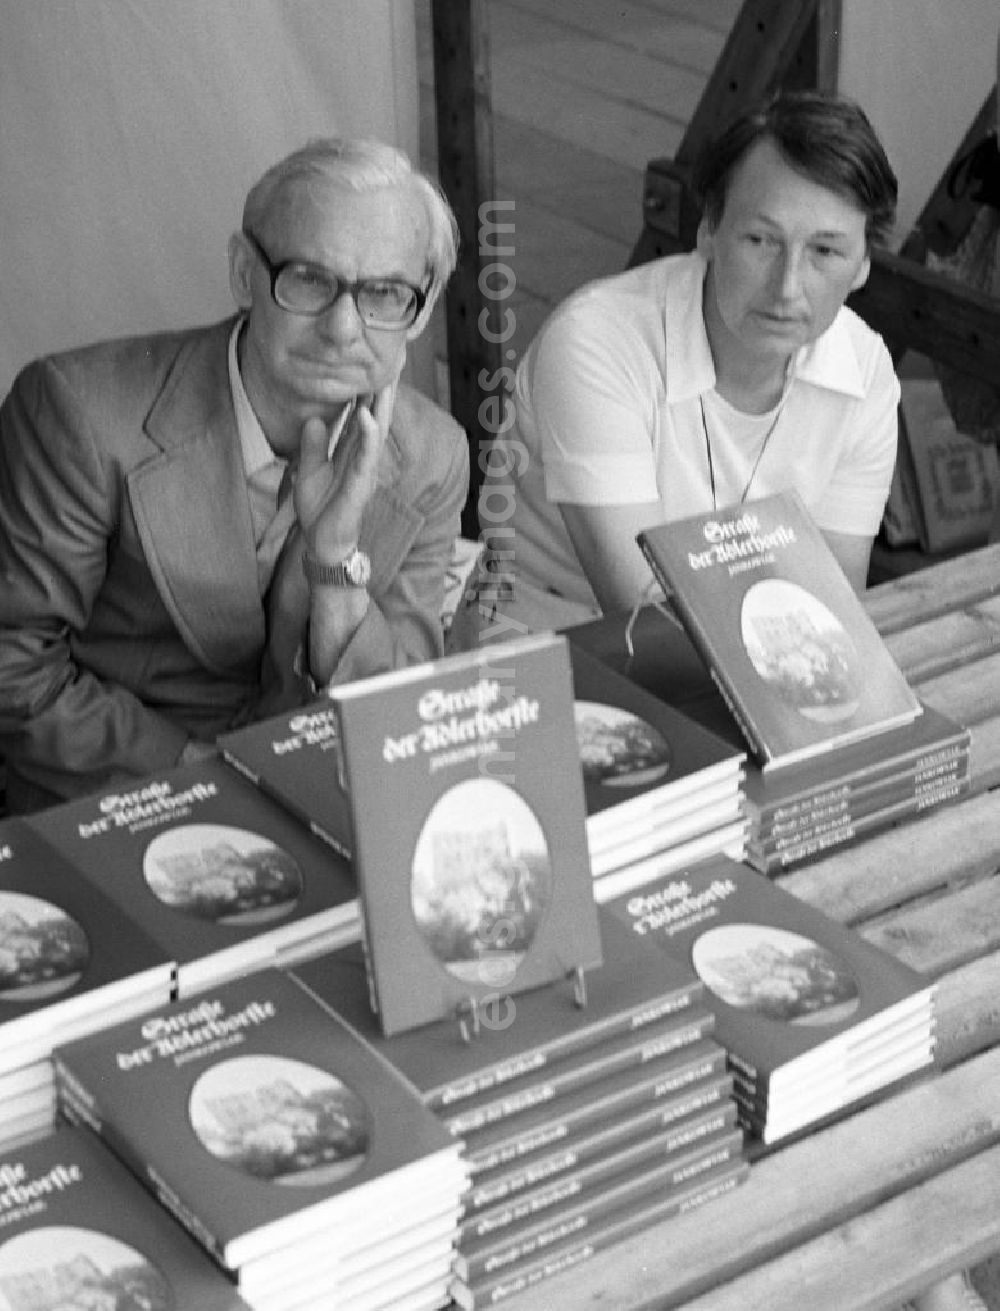 Potsdam: Die Schriftsteller Christa und Johannes Jankowiak präsentieren ihr Buch Straße der Adlerhorste auf dem Schriftstellerbasar in Potsdam.